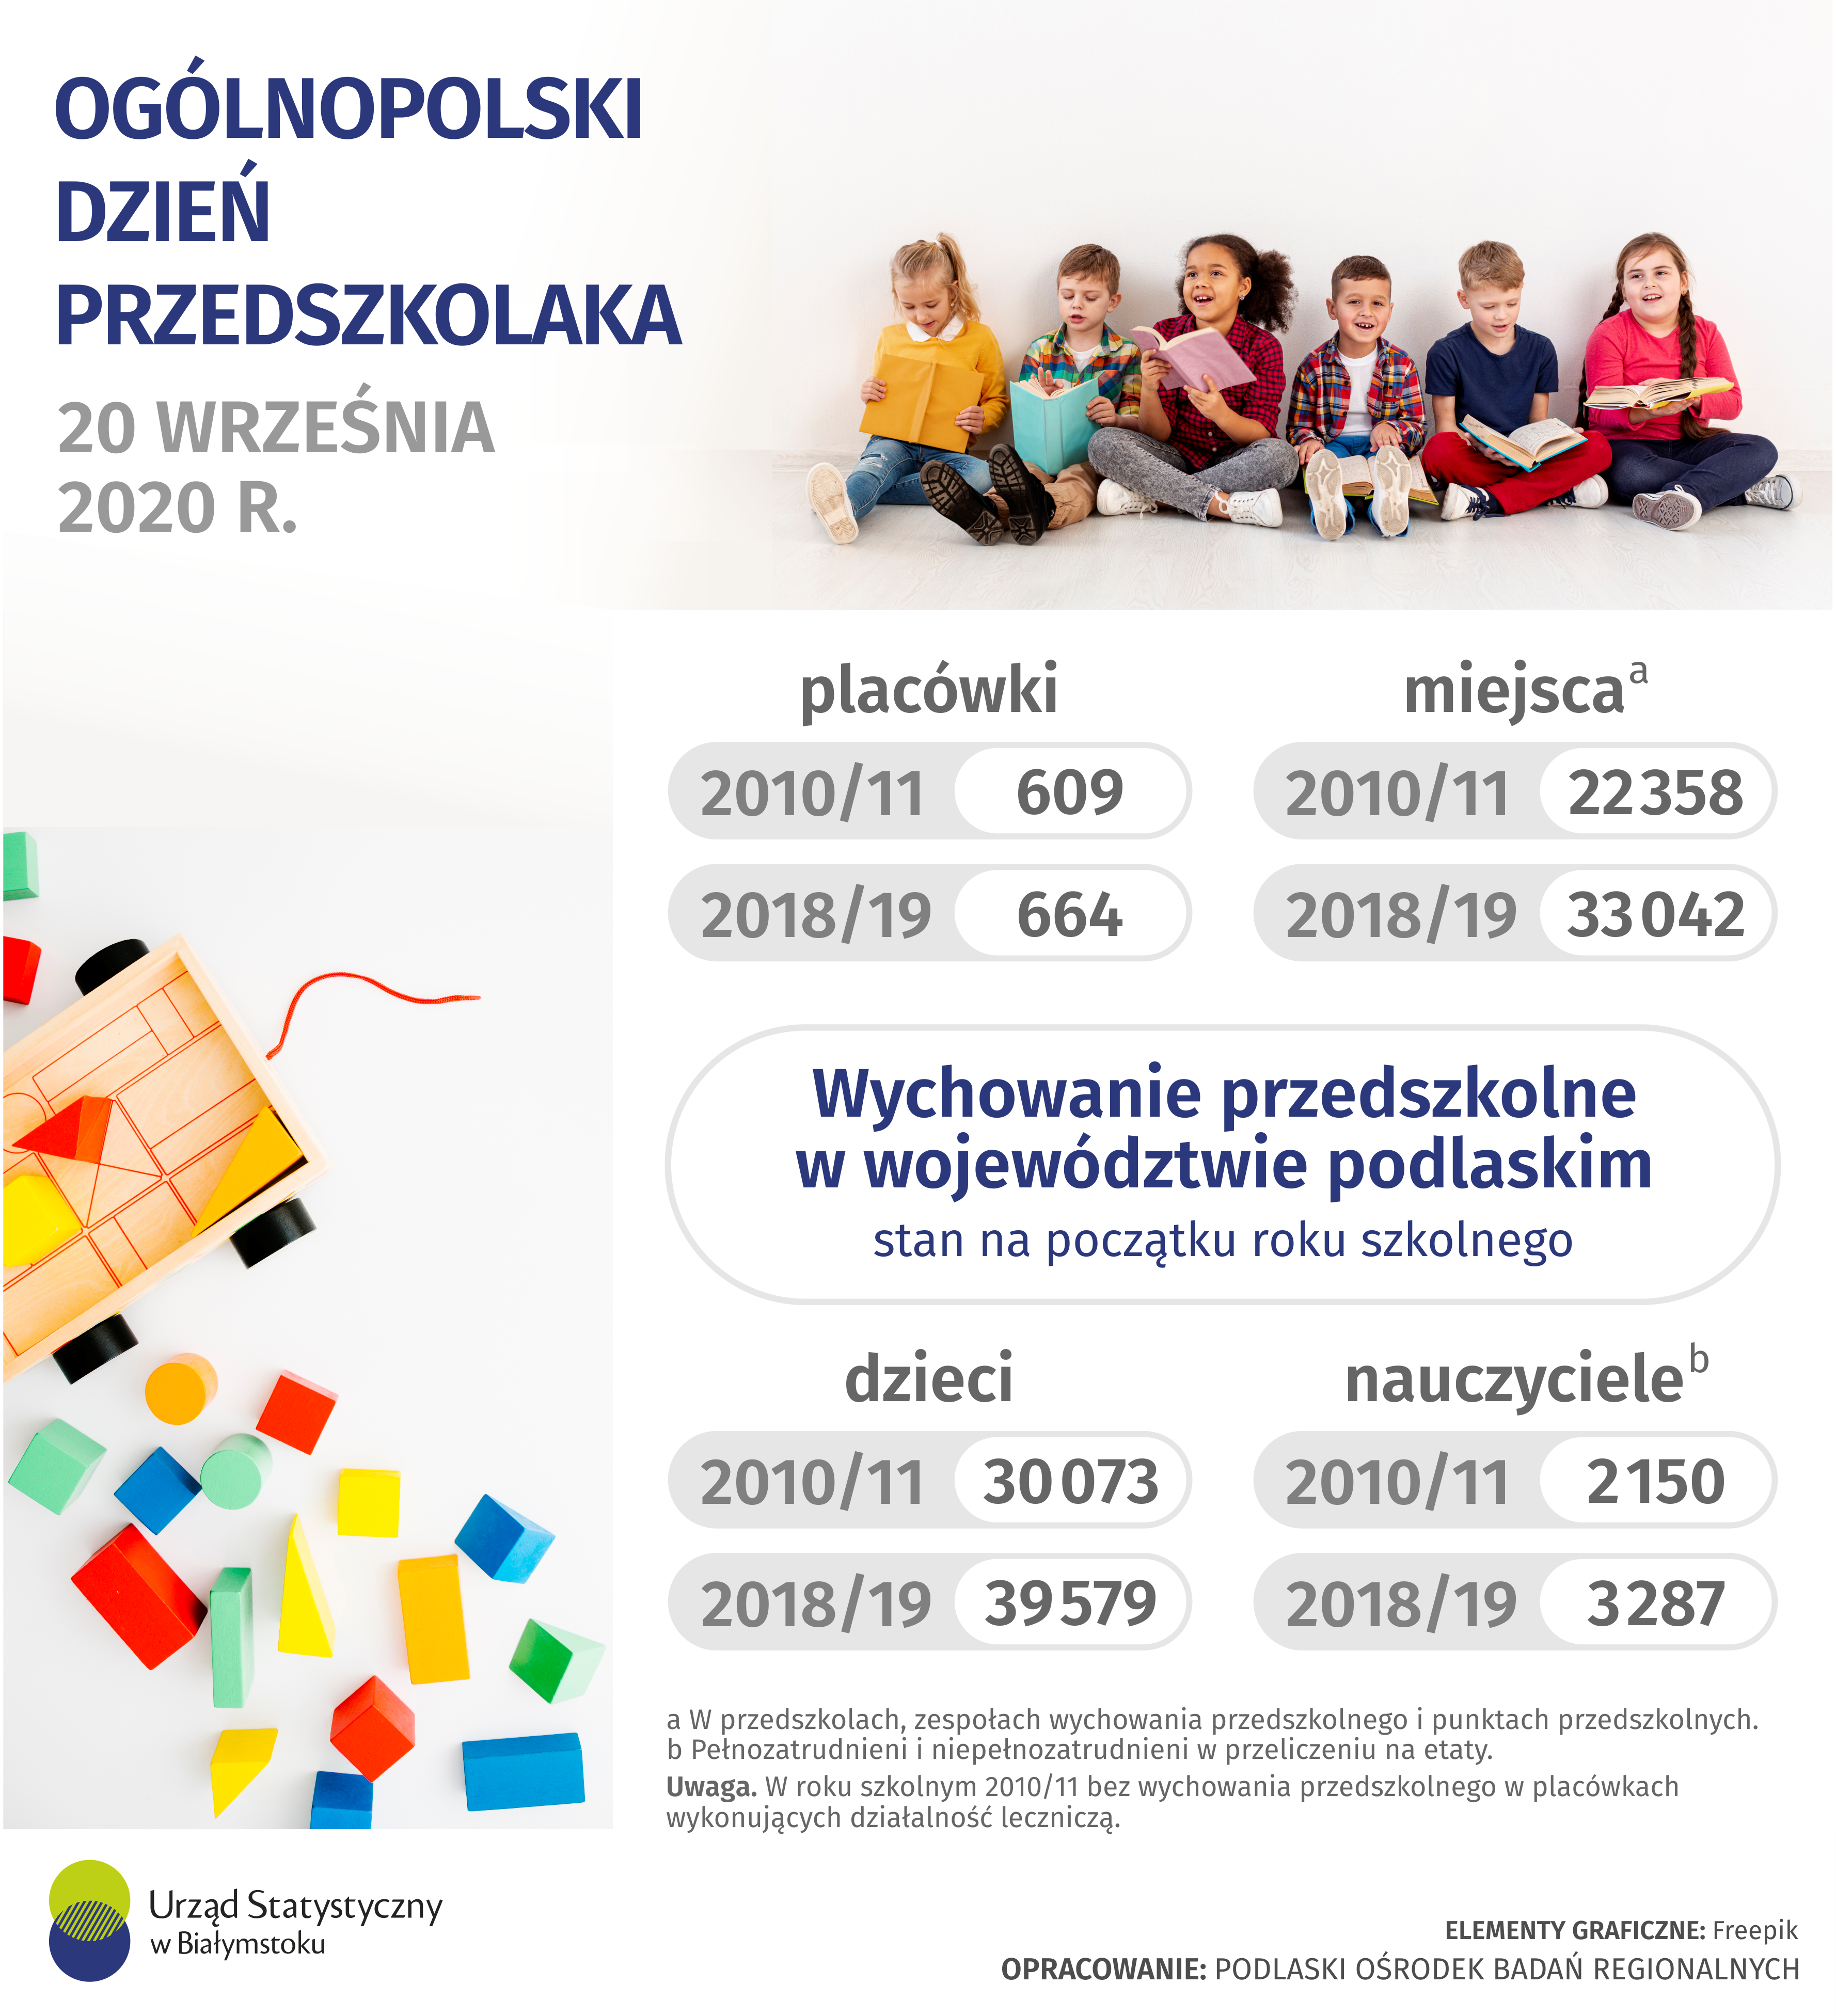 Infografika - Ogólnopolski Dzień Przedszkolaka. Dane do infografiki dostępne są w plikach do pobrania.